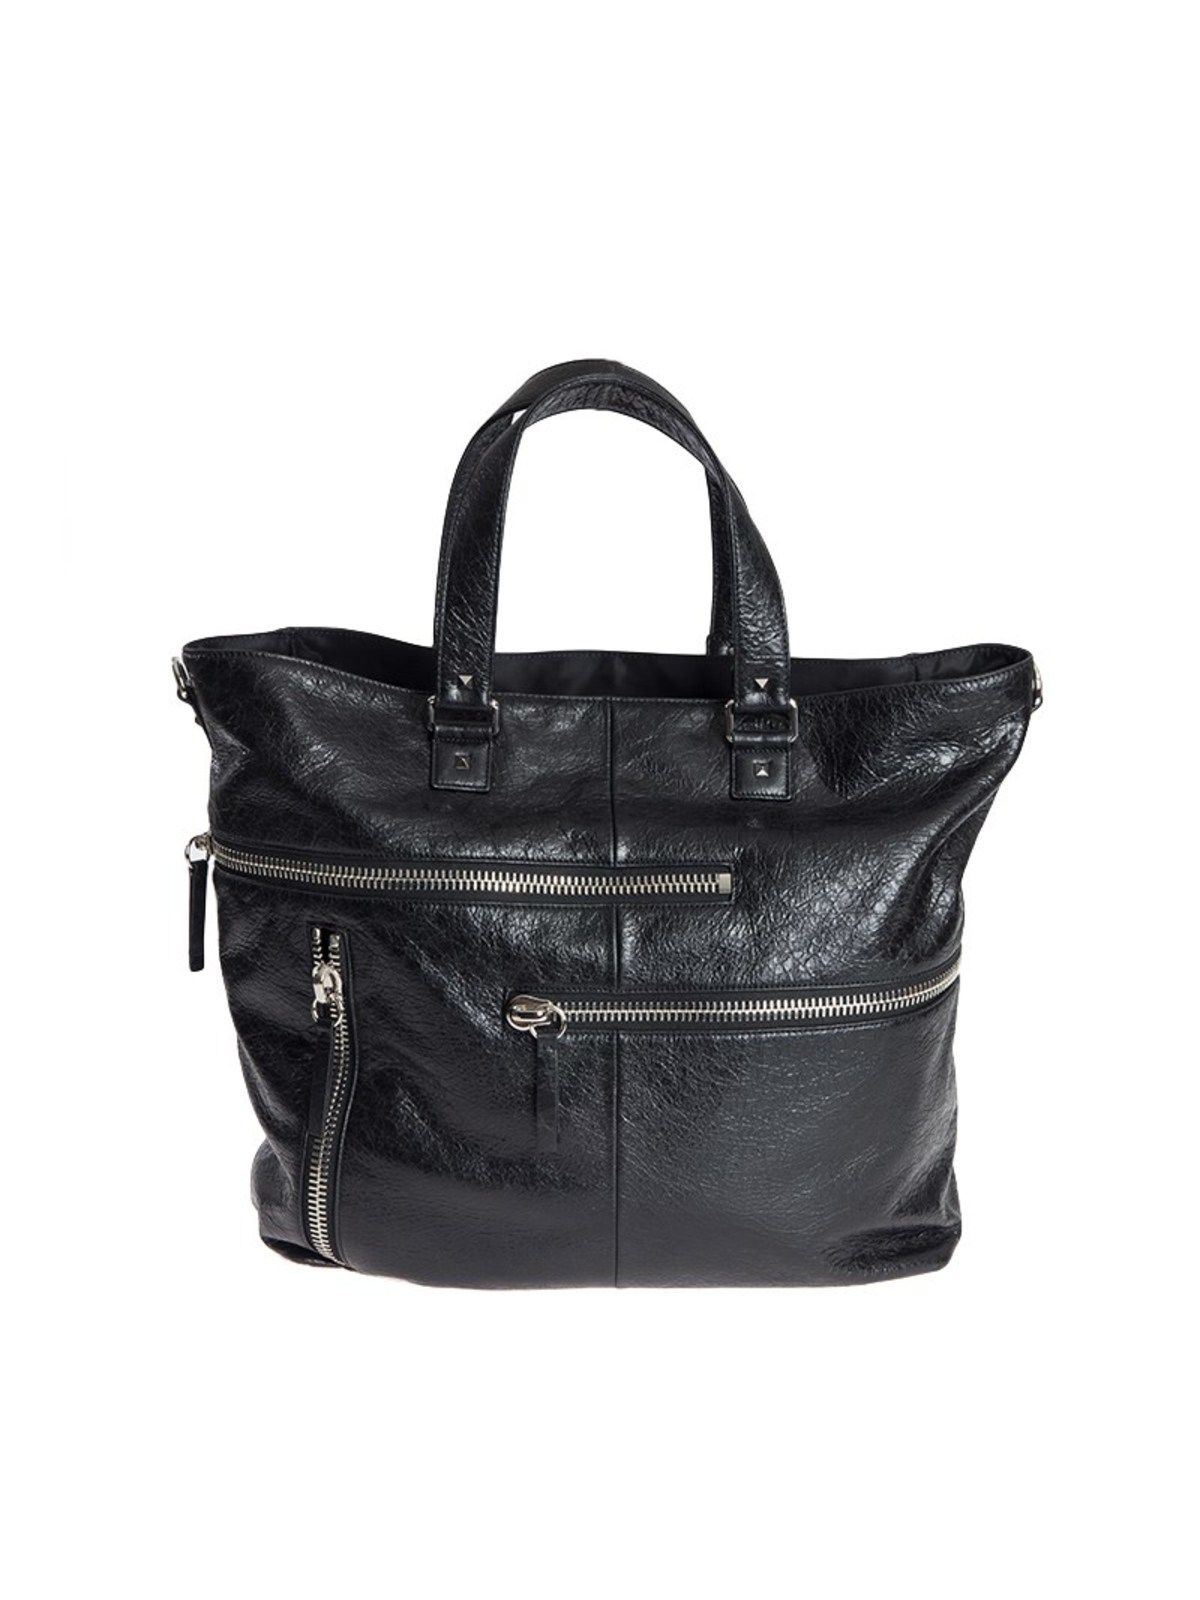 Valentino Garavani Leather Bag In Black